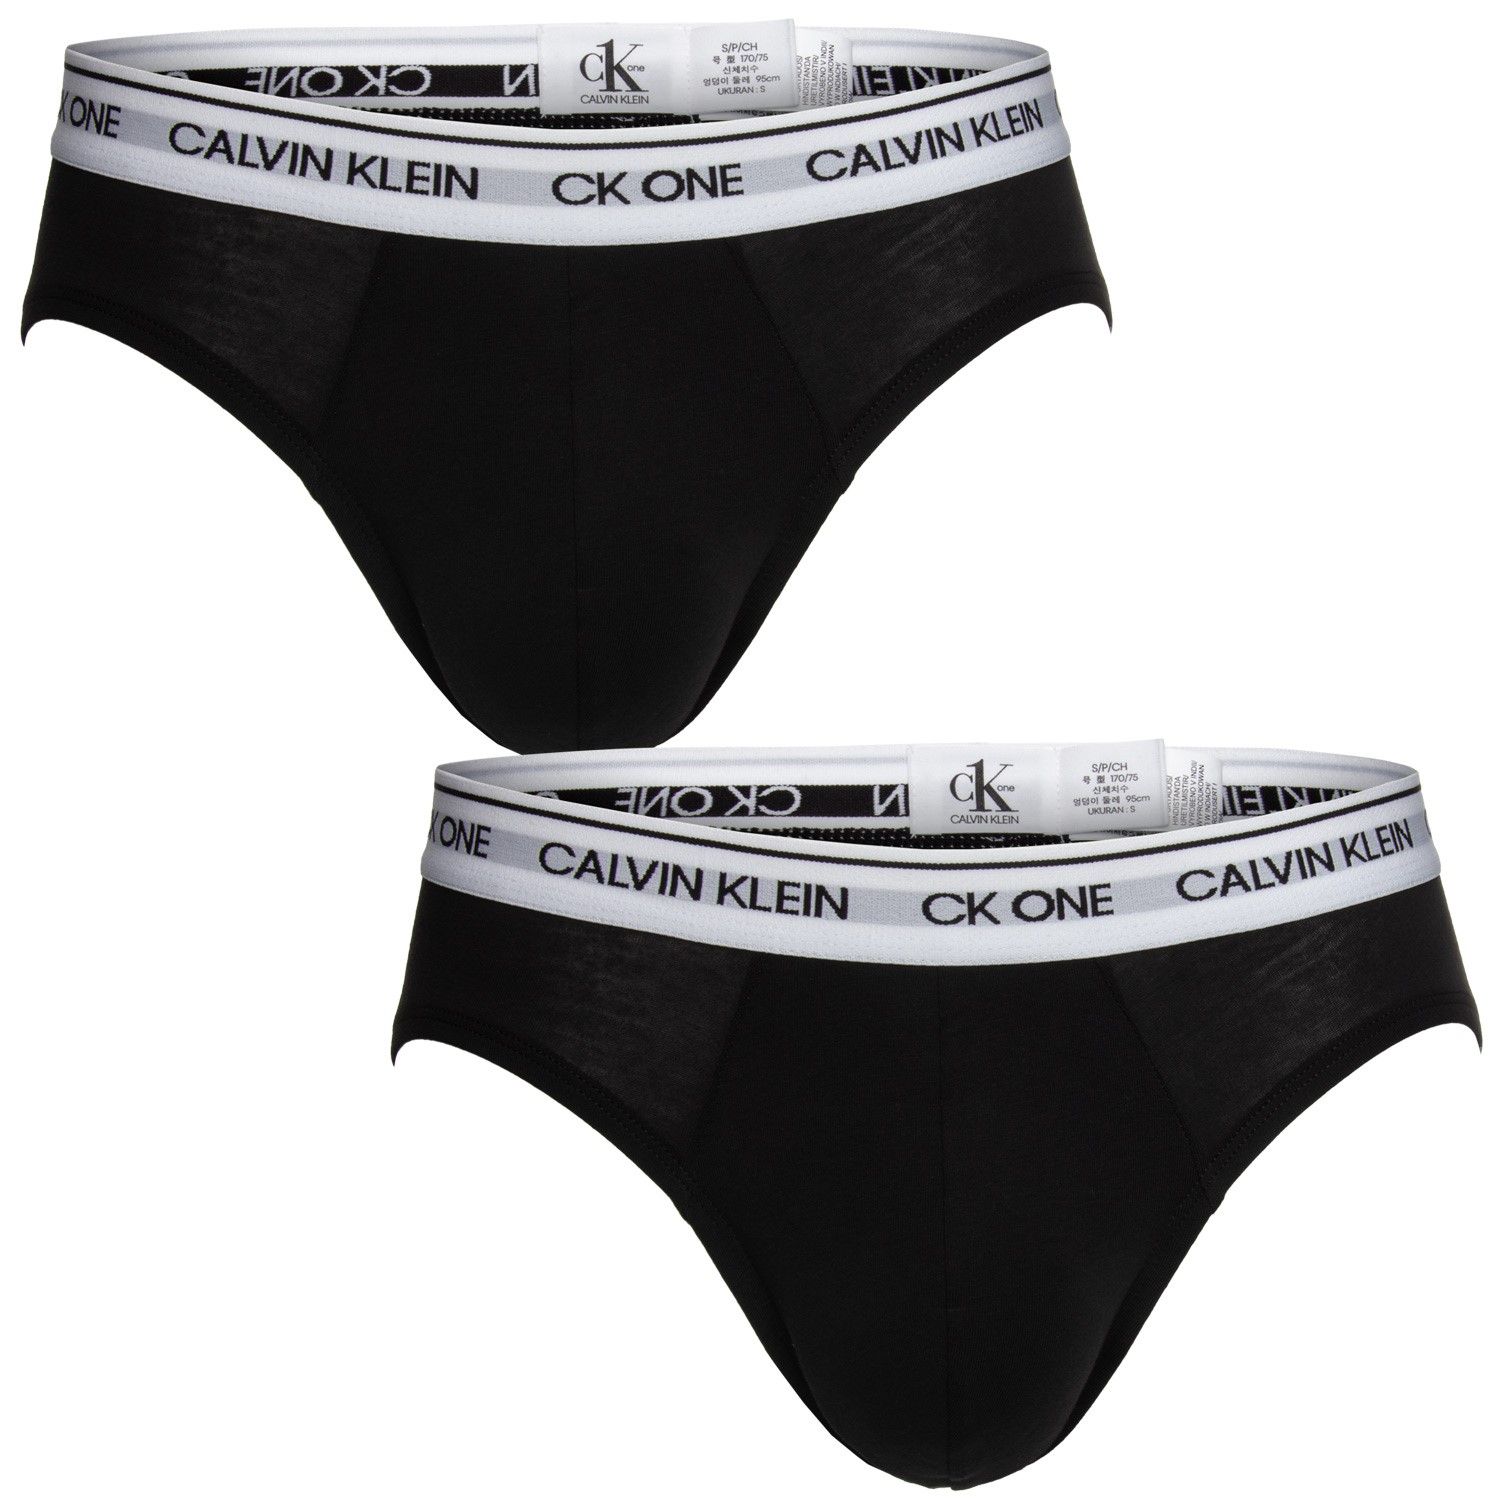 Calvin Klein One Cotton Hip Briefs